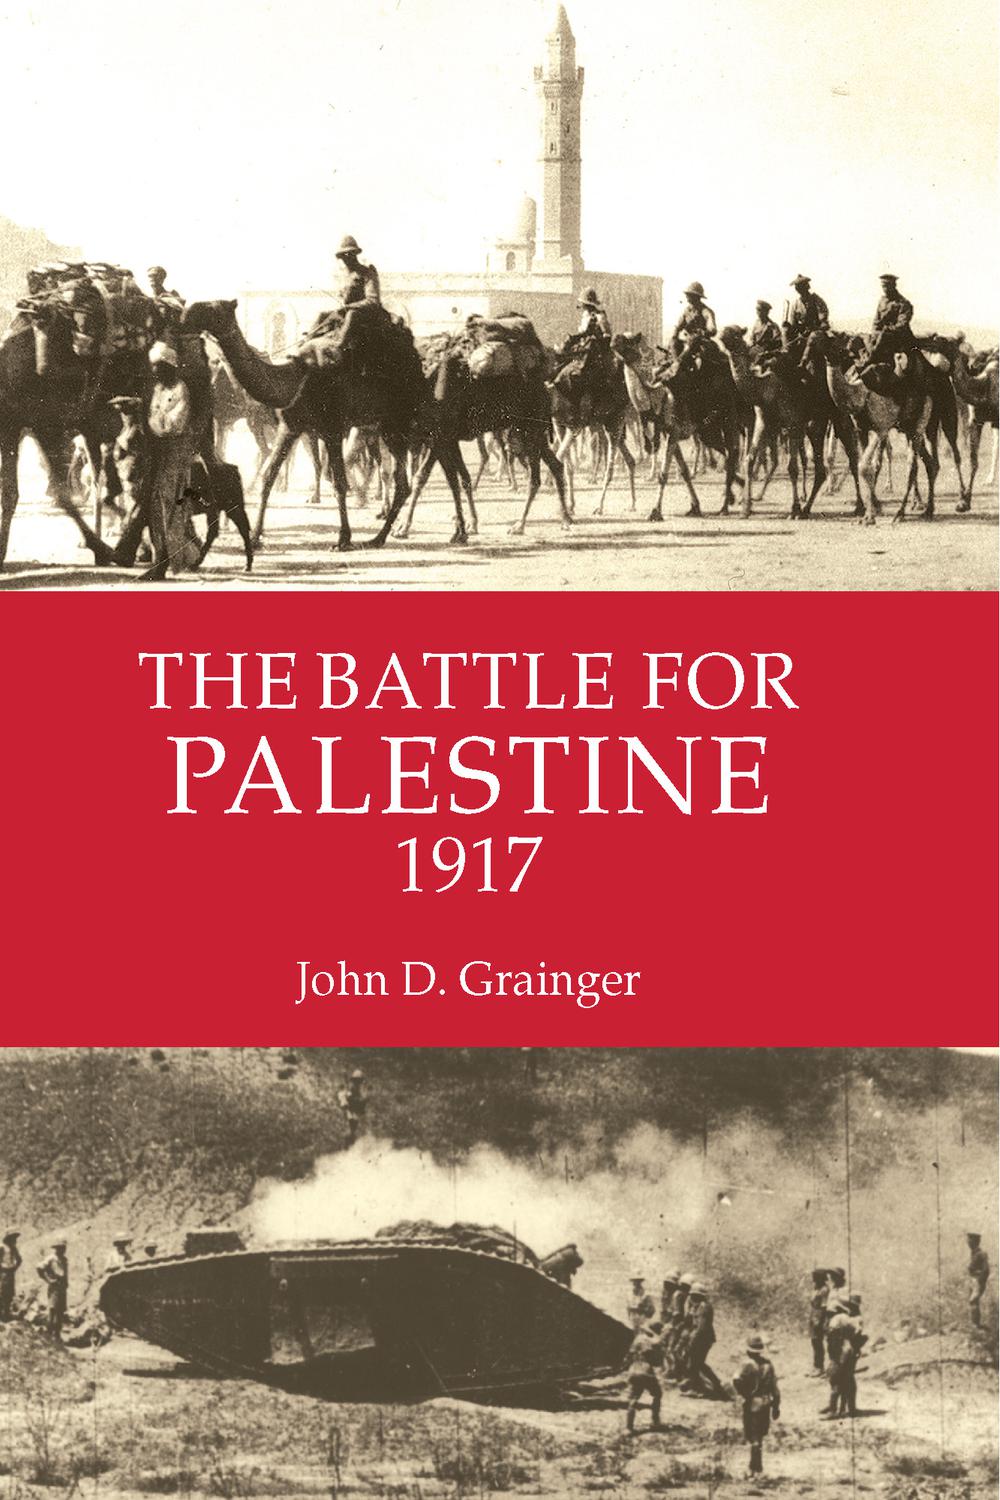 The Battle for Palestine 1917 - John D. Grainger